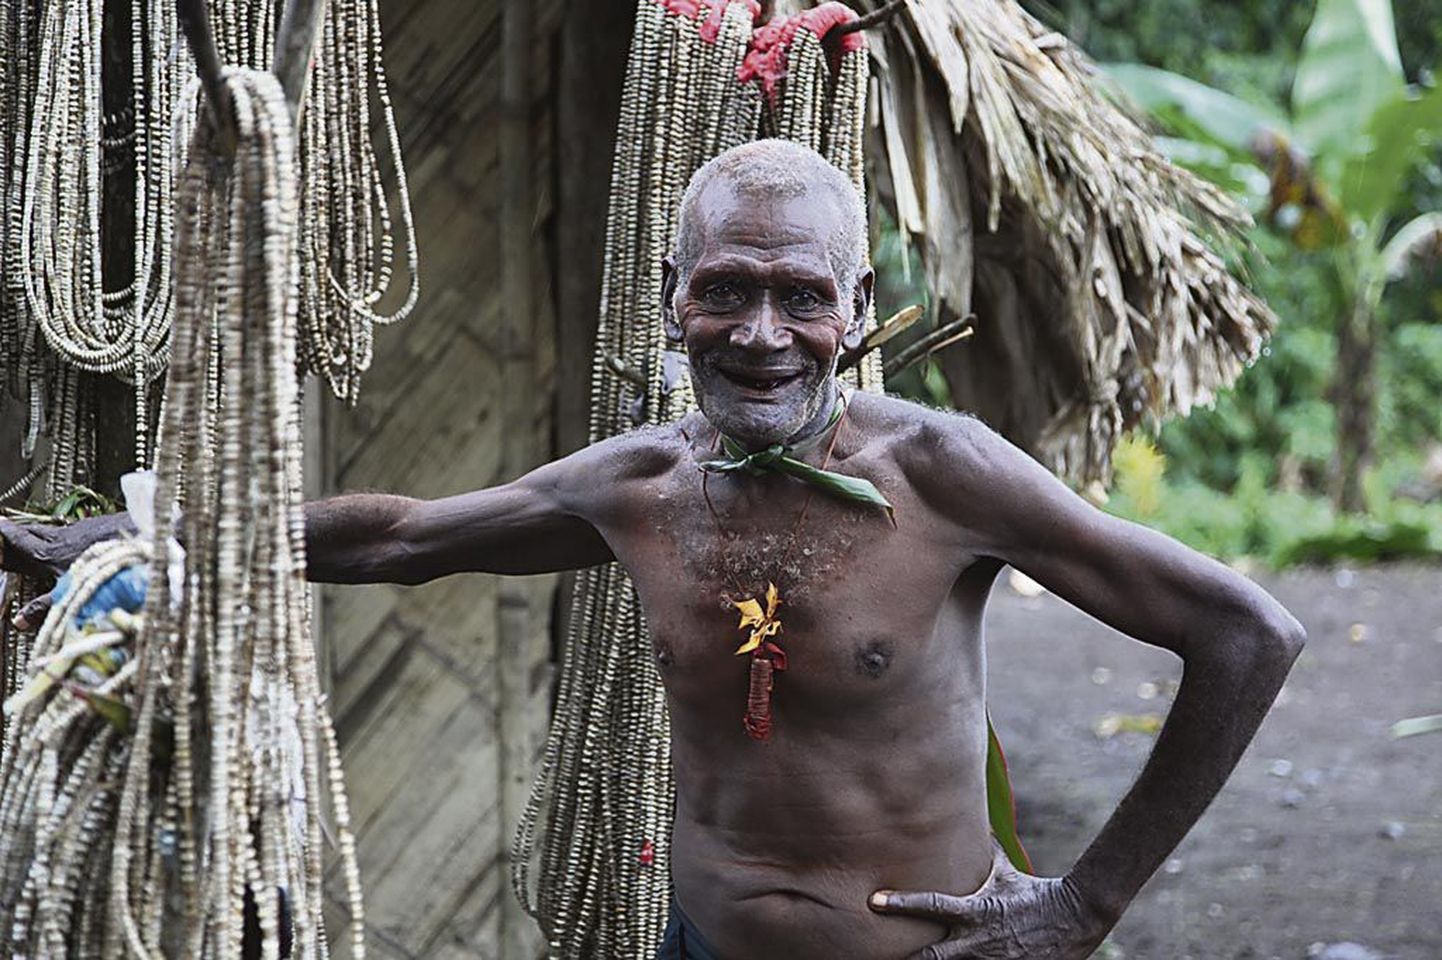 Paul Wolfframi filmi “Stori Tumbuna: esivanemate lood”, mis näitab laki rahva elu Paapua Uus-Guineas, saab festivalil näha 6. juulil Pärnu raekojas.